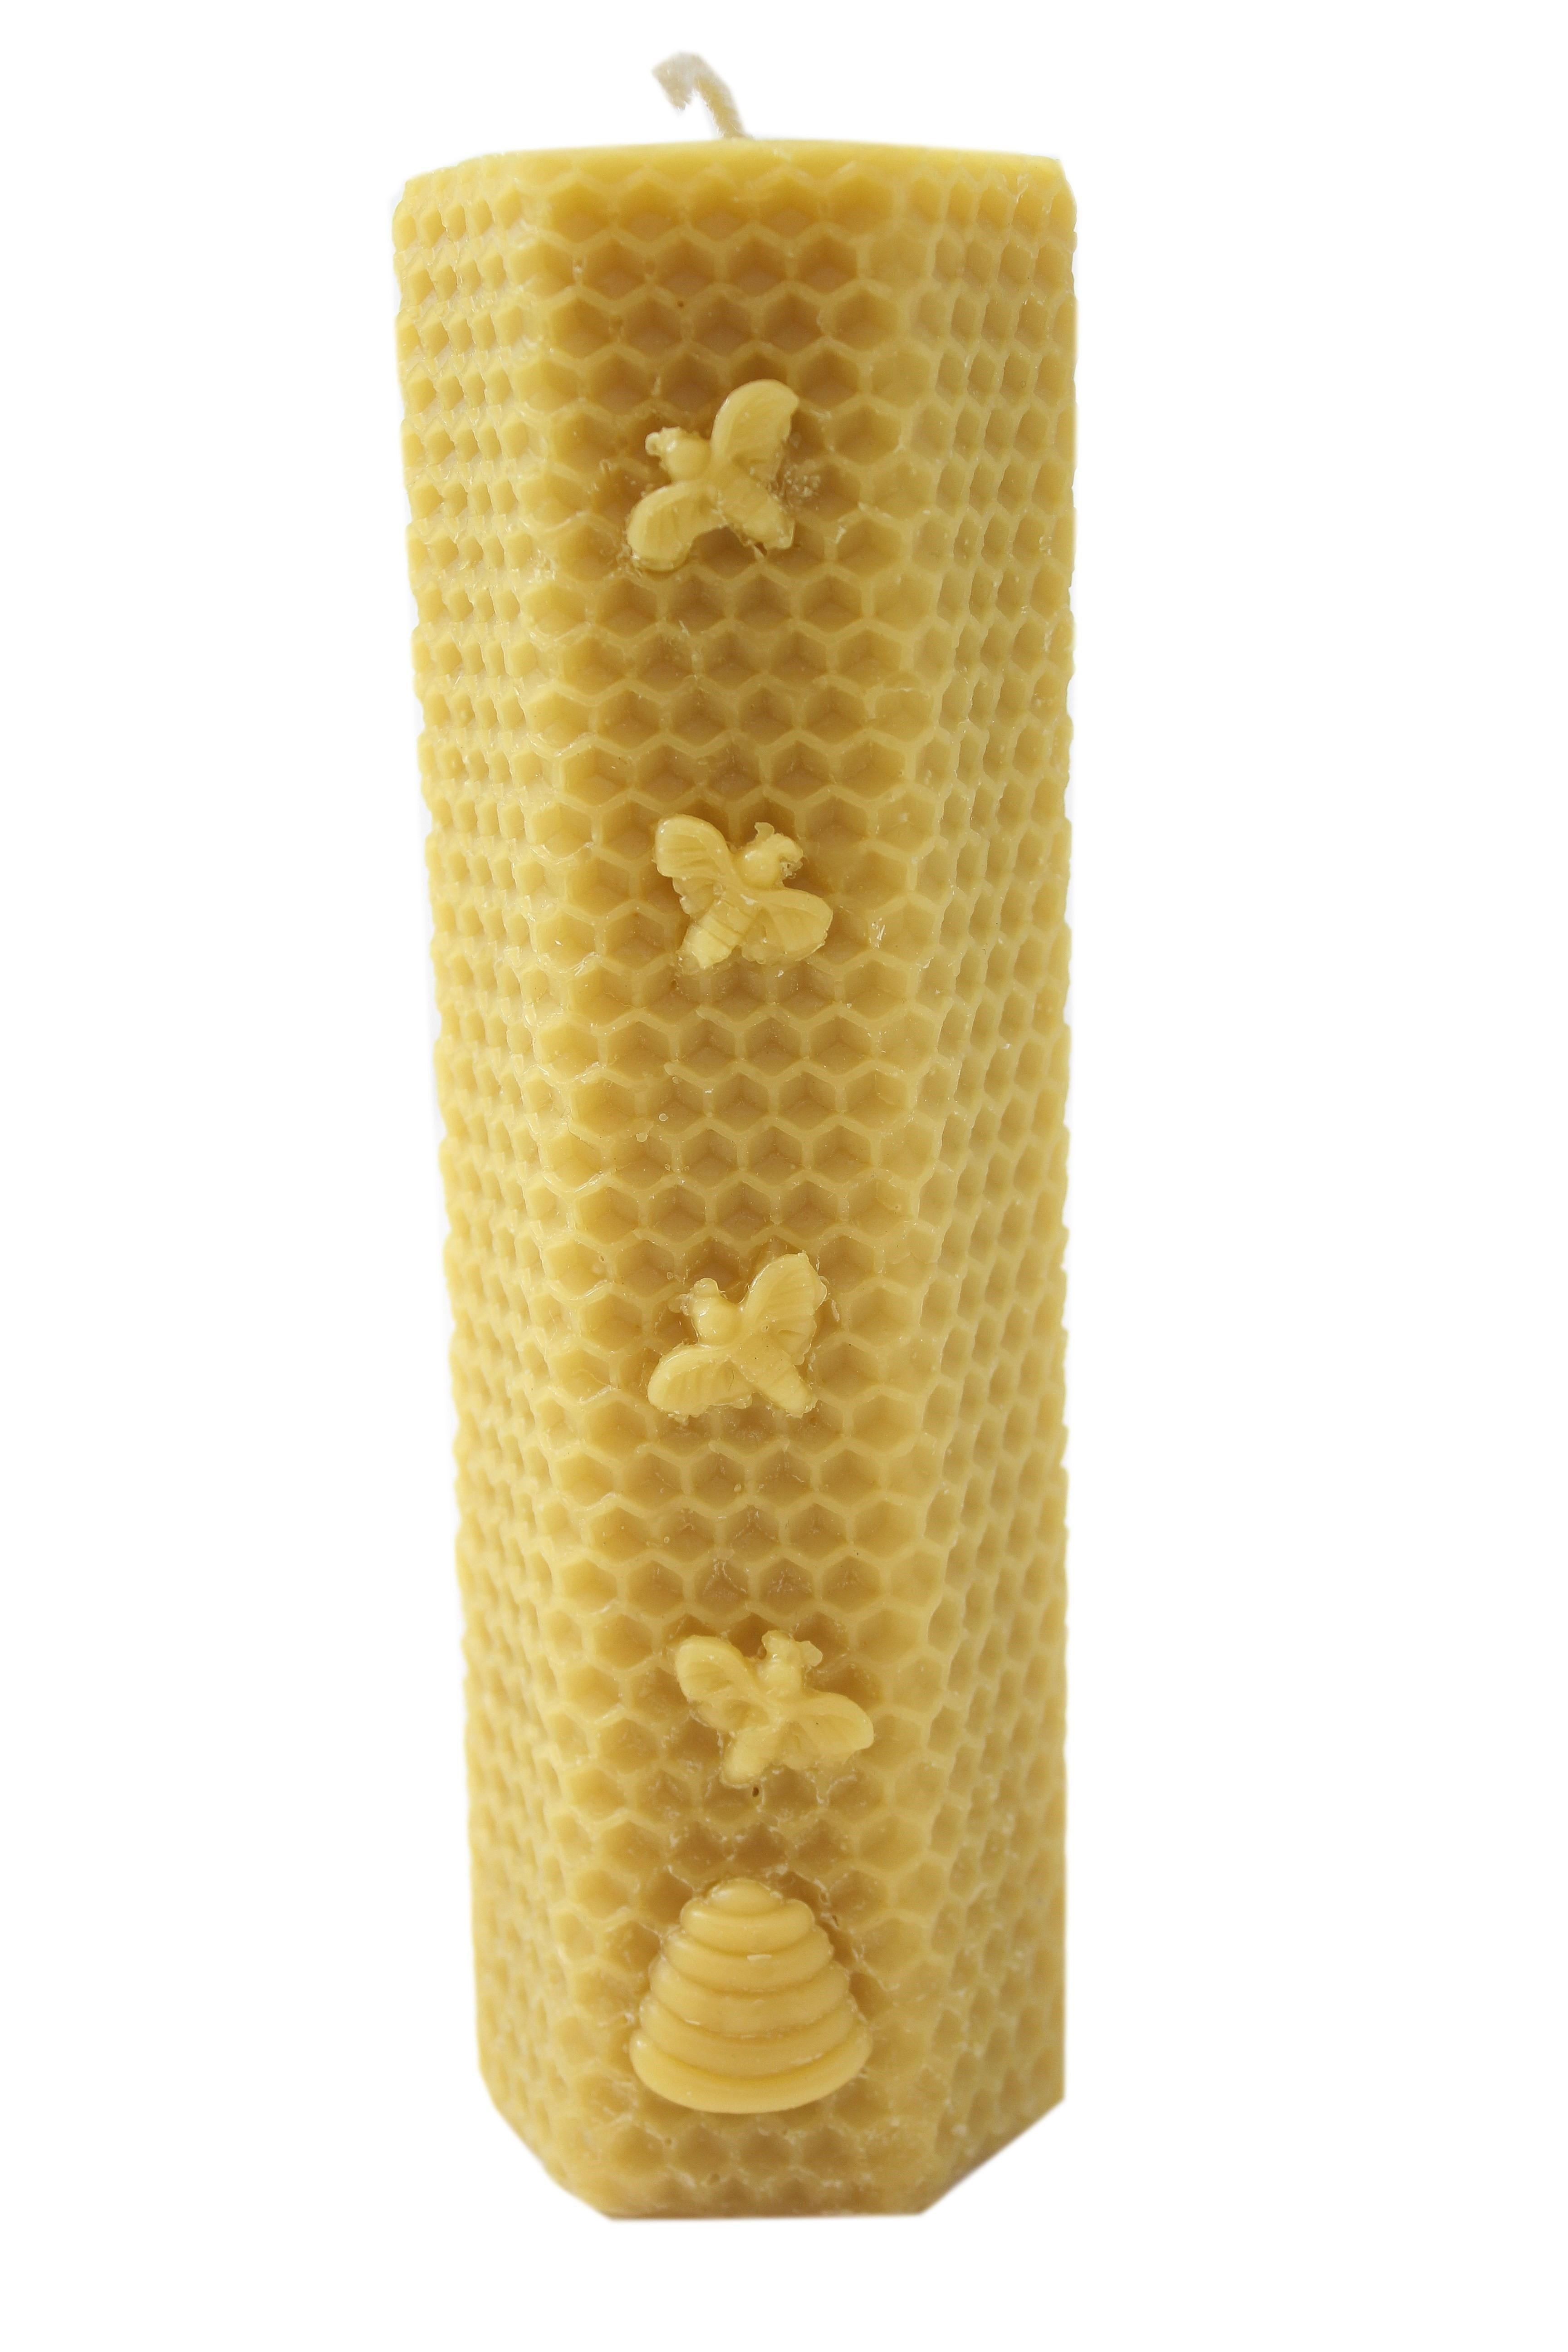 Bougie hexagonale en cire d'abeille